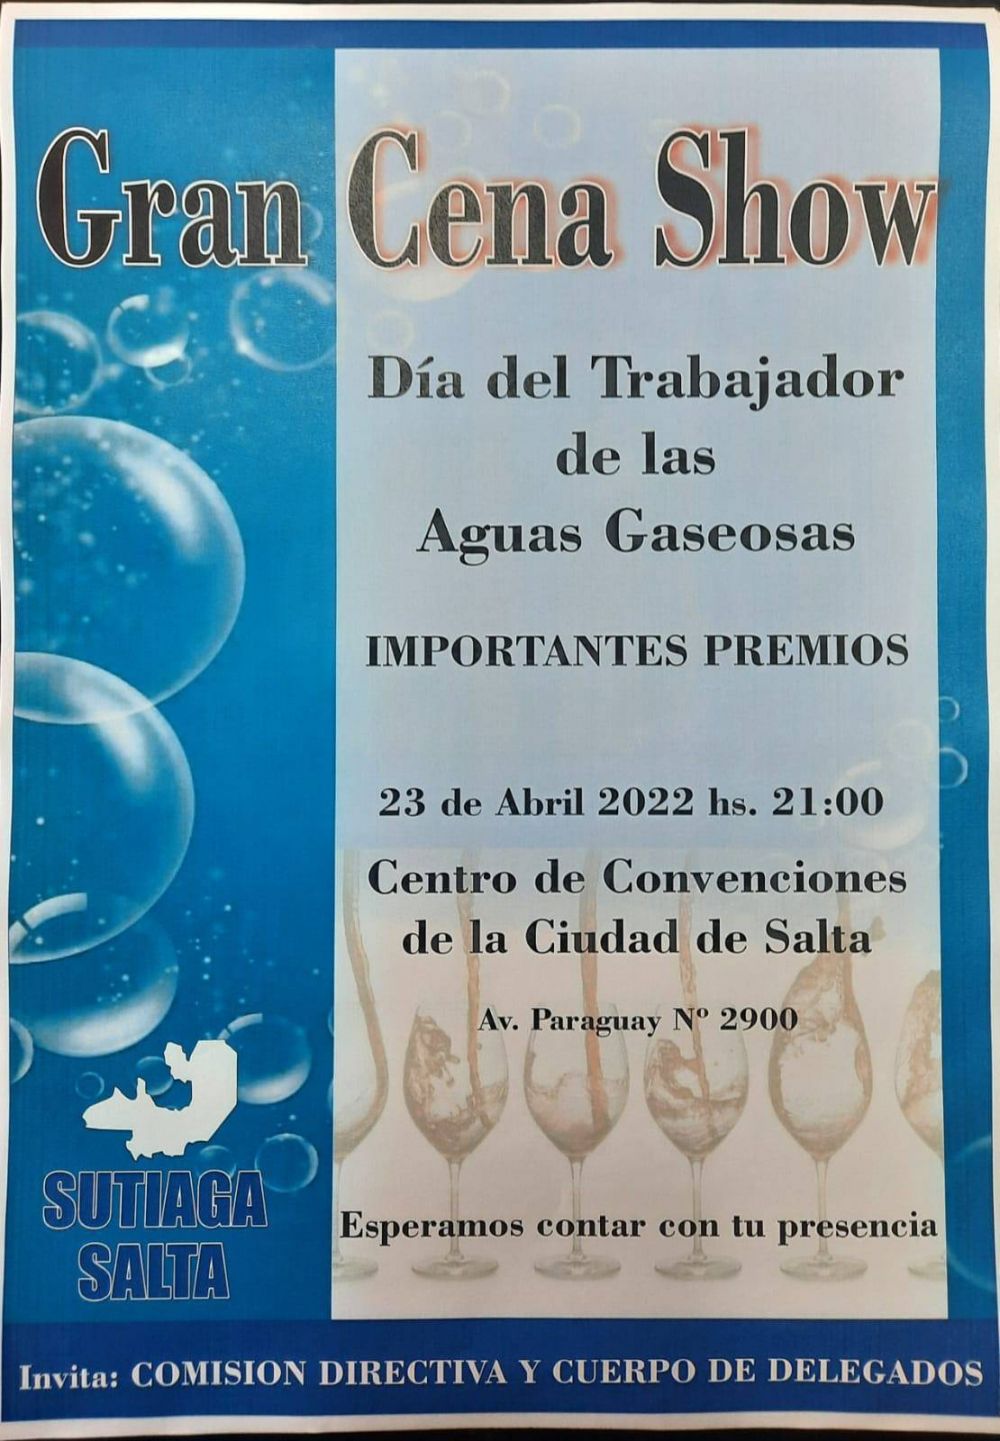 SUTIAGA: 23 de abril Gran cena show da del Trabajador de Aguas Gaseosas en Centro de Convenciones Salta